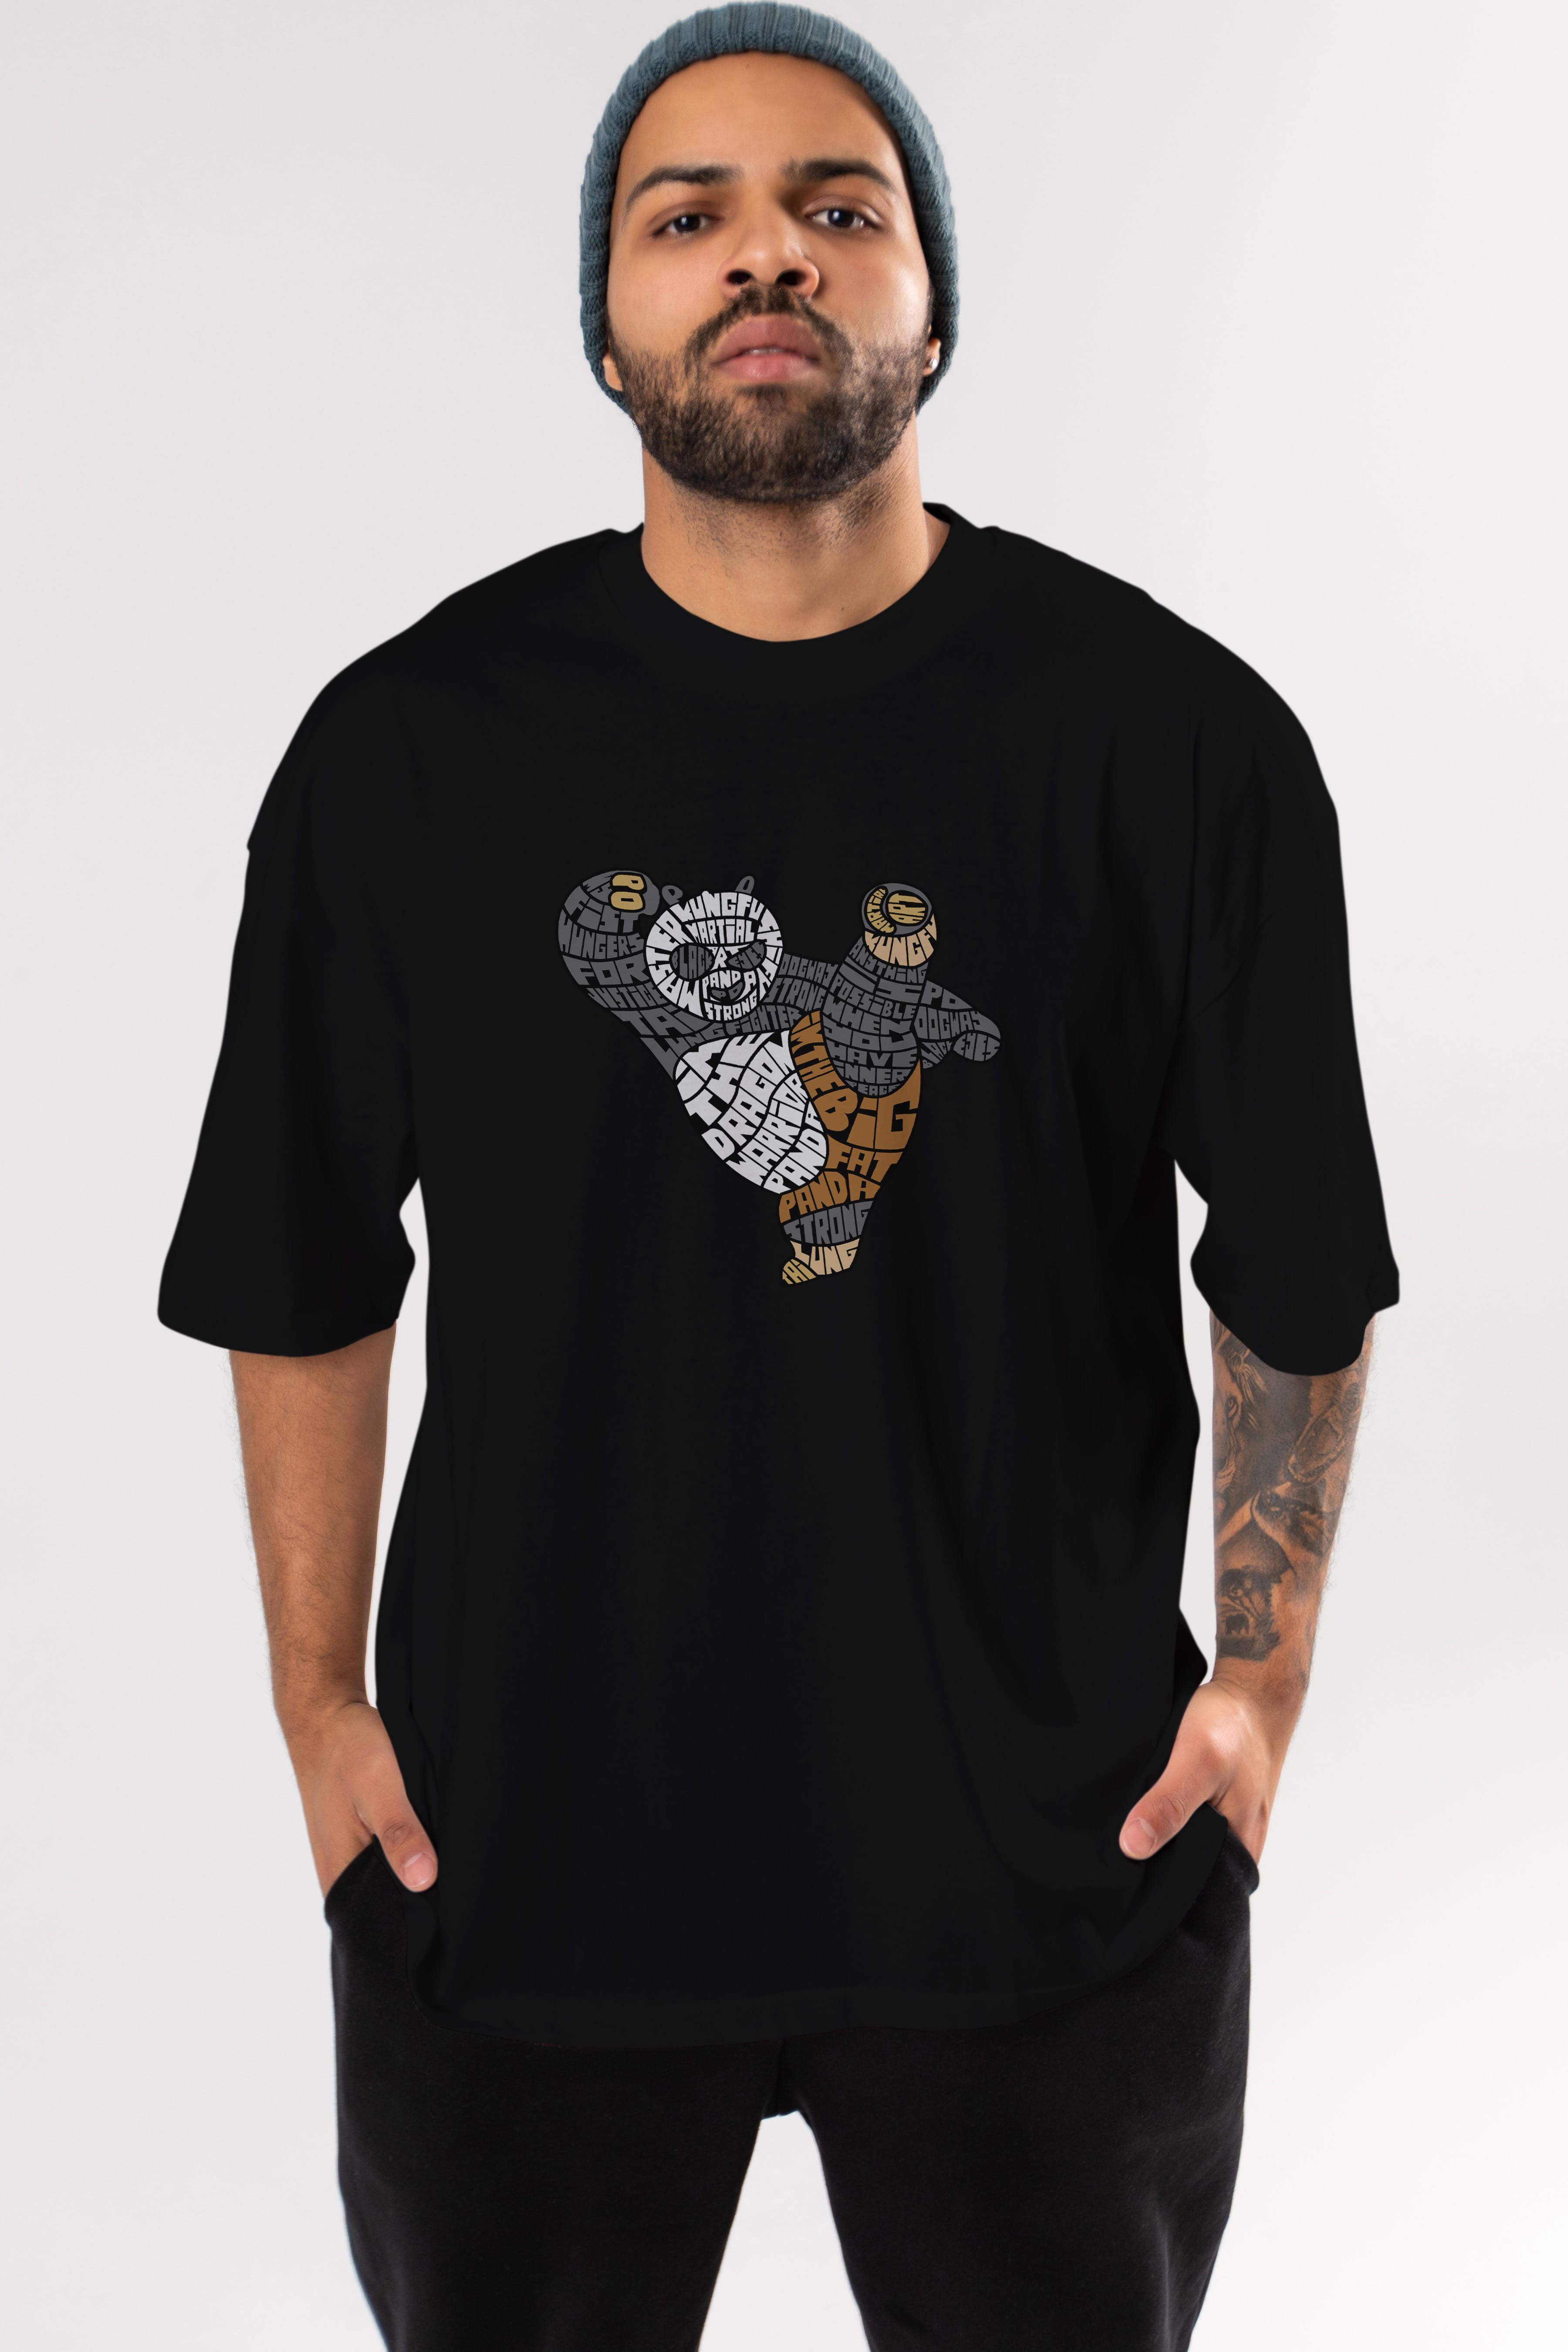 Warrior Panda Ön Baskılı Oversize t-shirt %100 pamuk Erkek Kadın Unisex